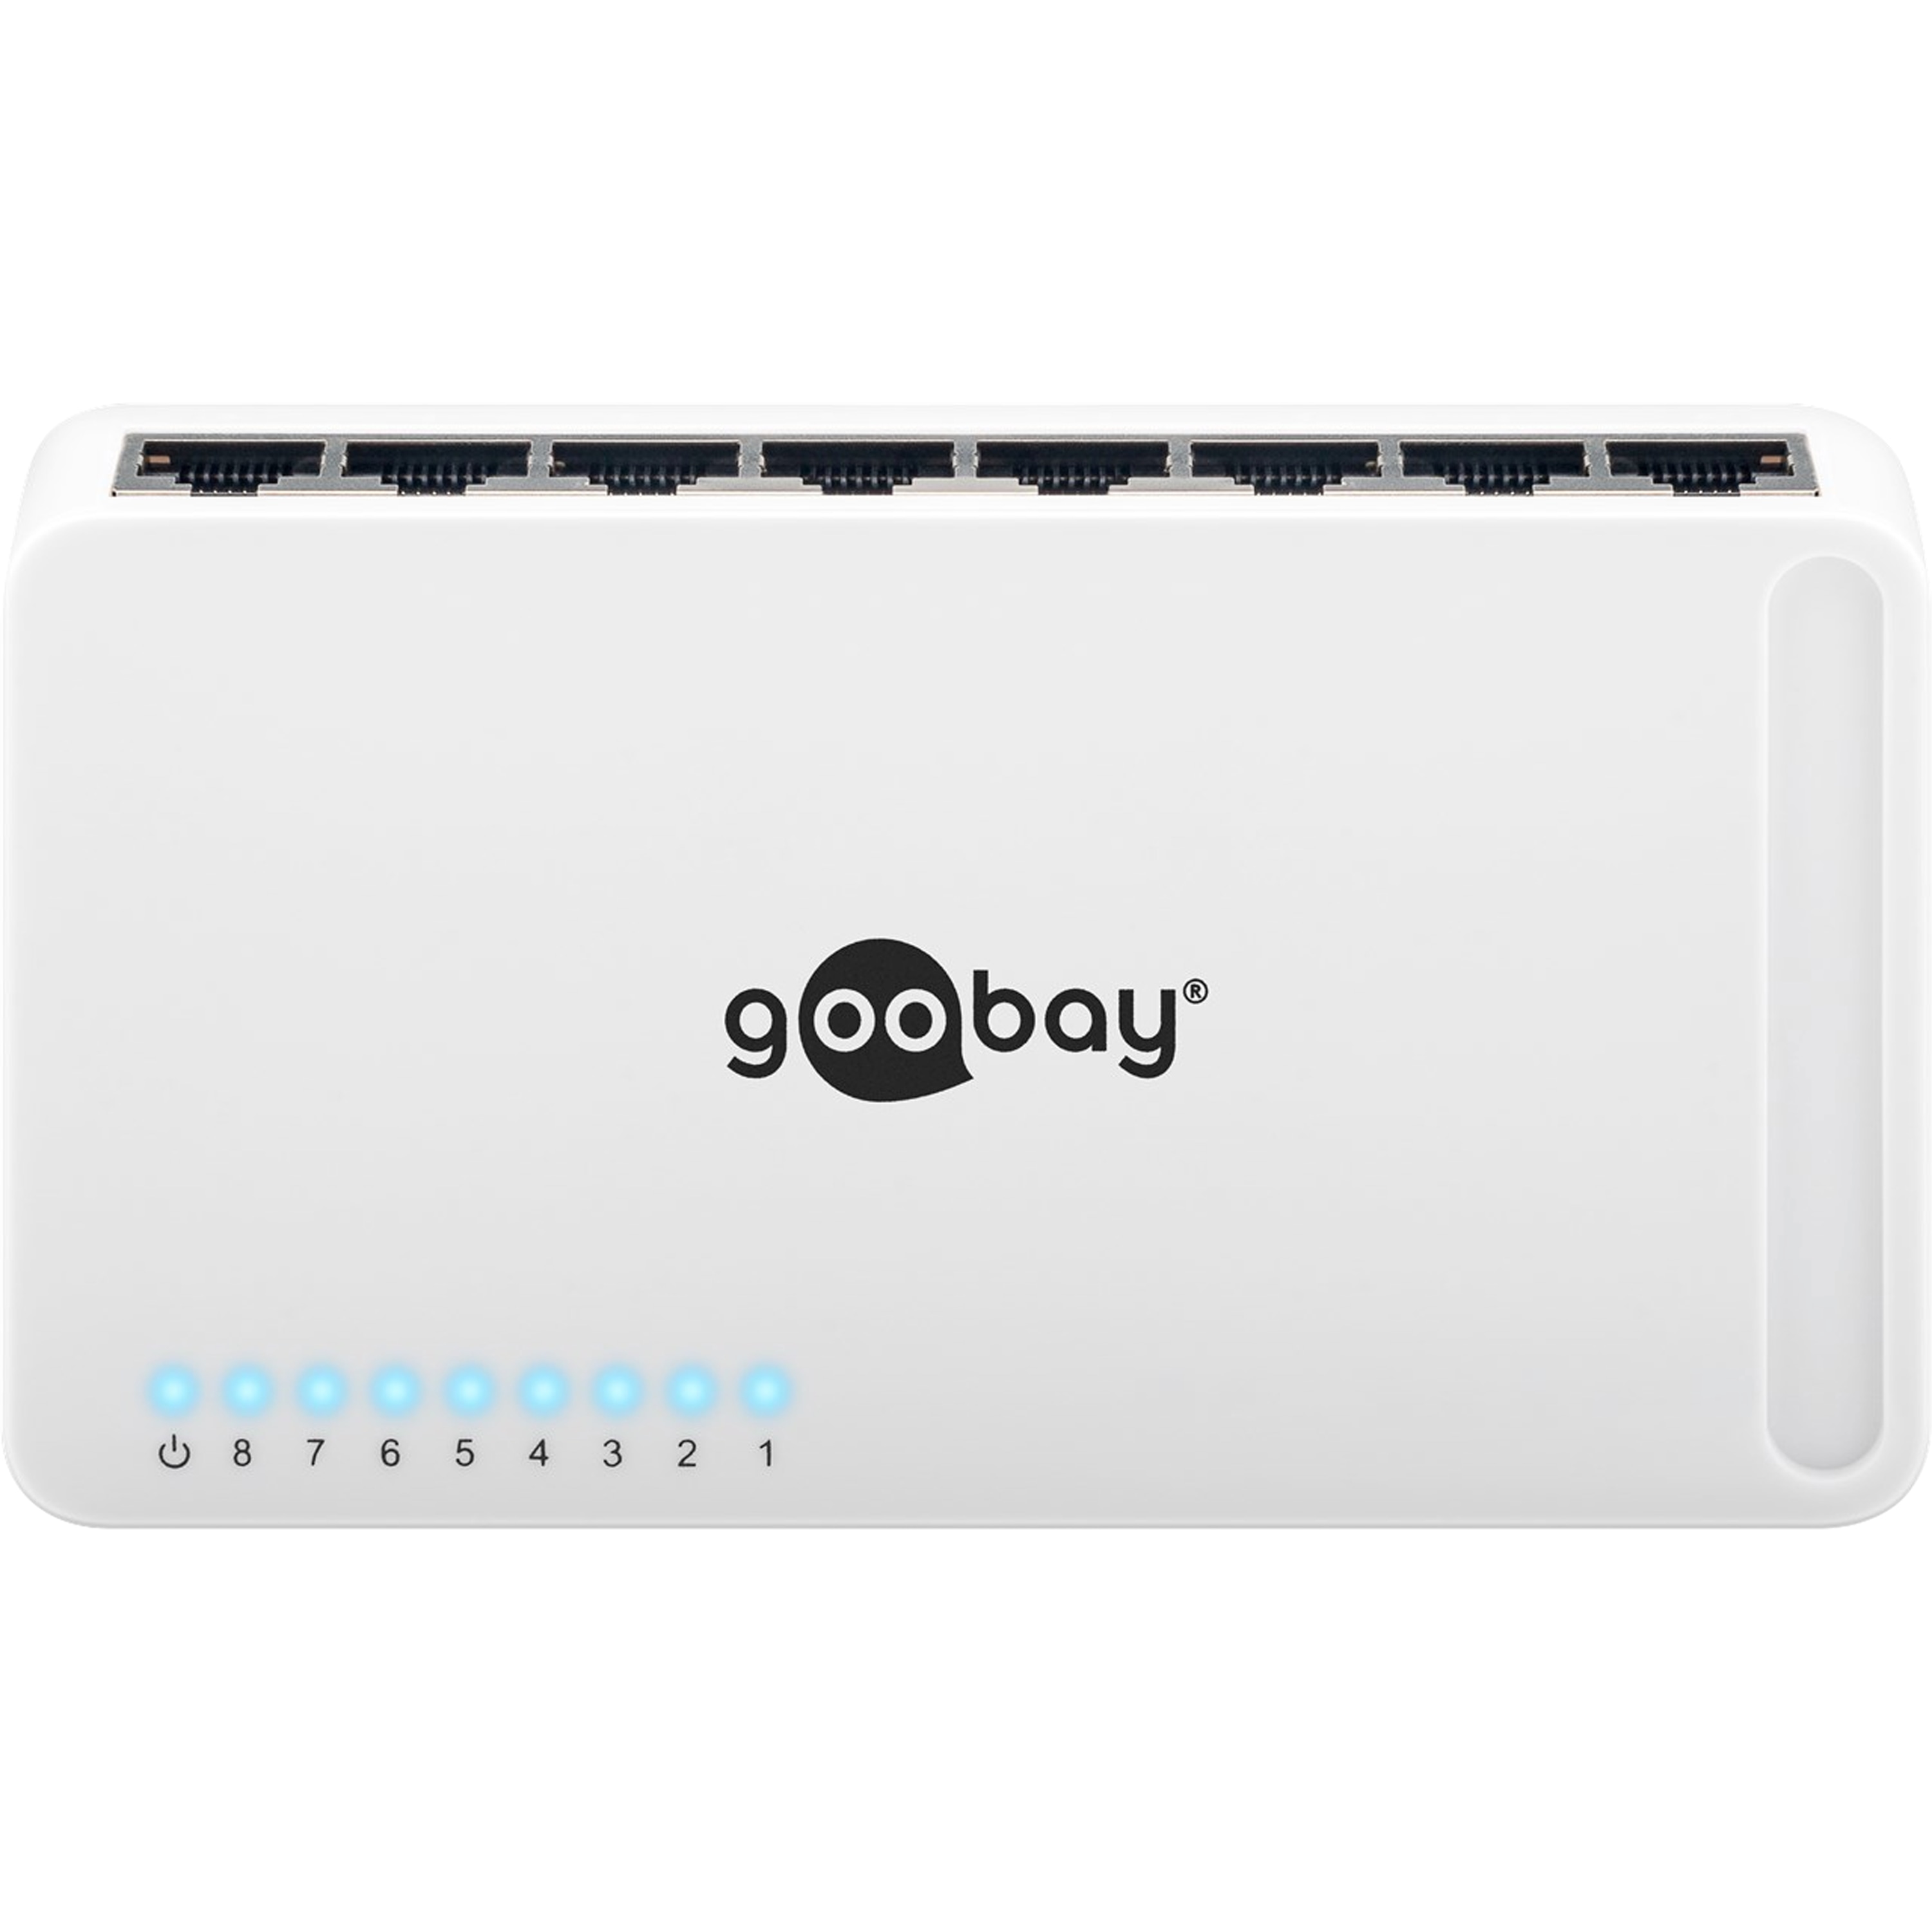 GOOBAY 8 Port Gigabit Ethernet Netzwerk-Switch, mit 8 x RJ45-Anschlüssen 10/100/1000 MBit/s, Green-Power Ethernet, unterstützt Auto-Negotiation Auto MDI/MDIX, Plug & Play